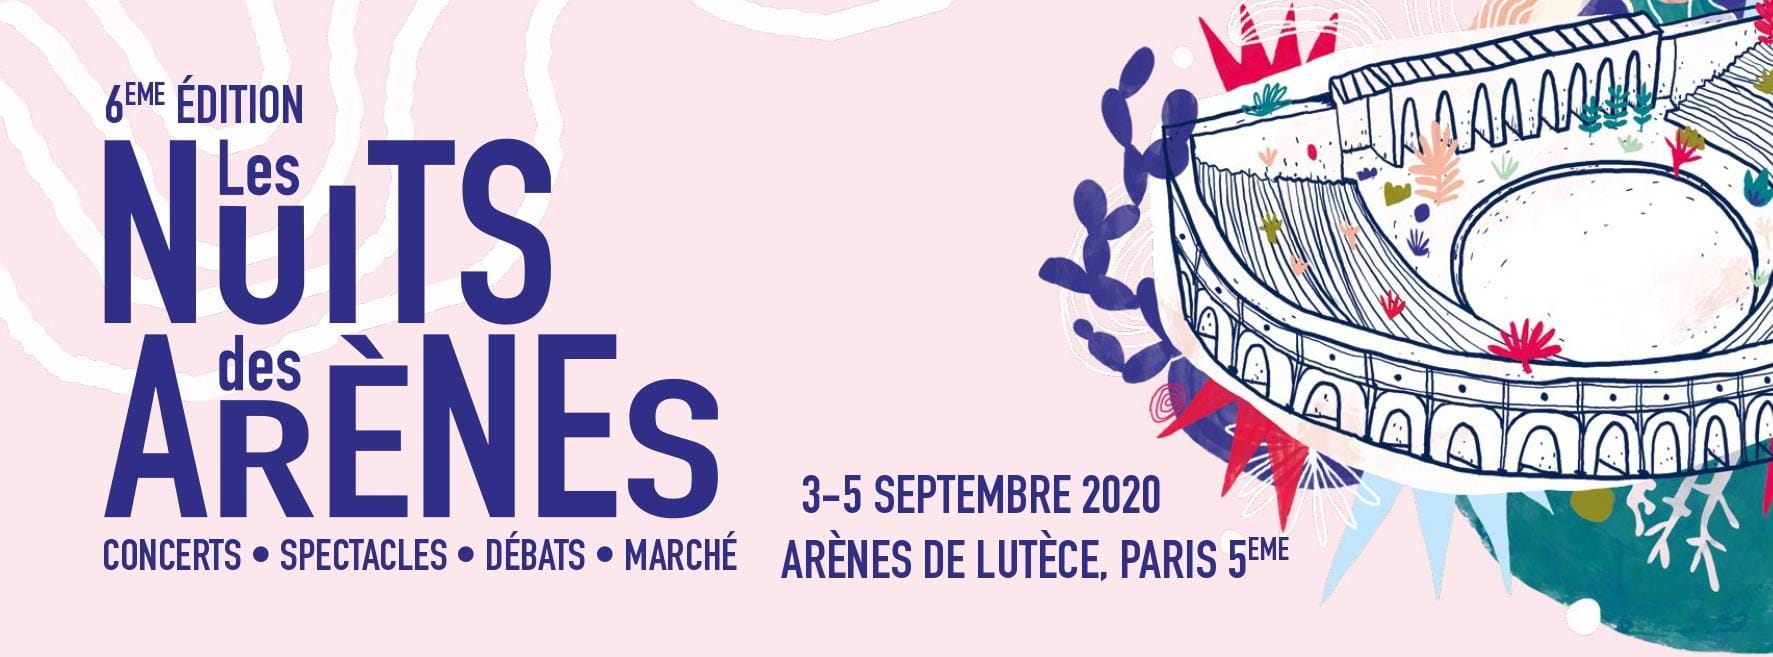 Les Nuits des Arènes 2020 affiche festival